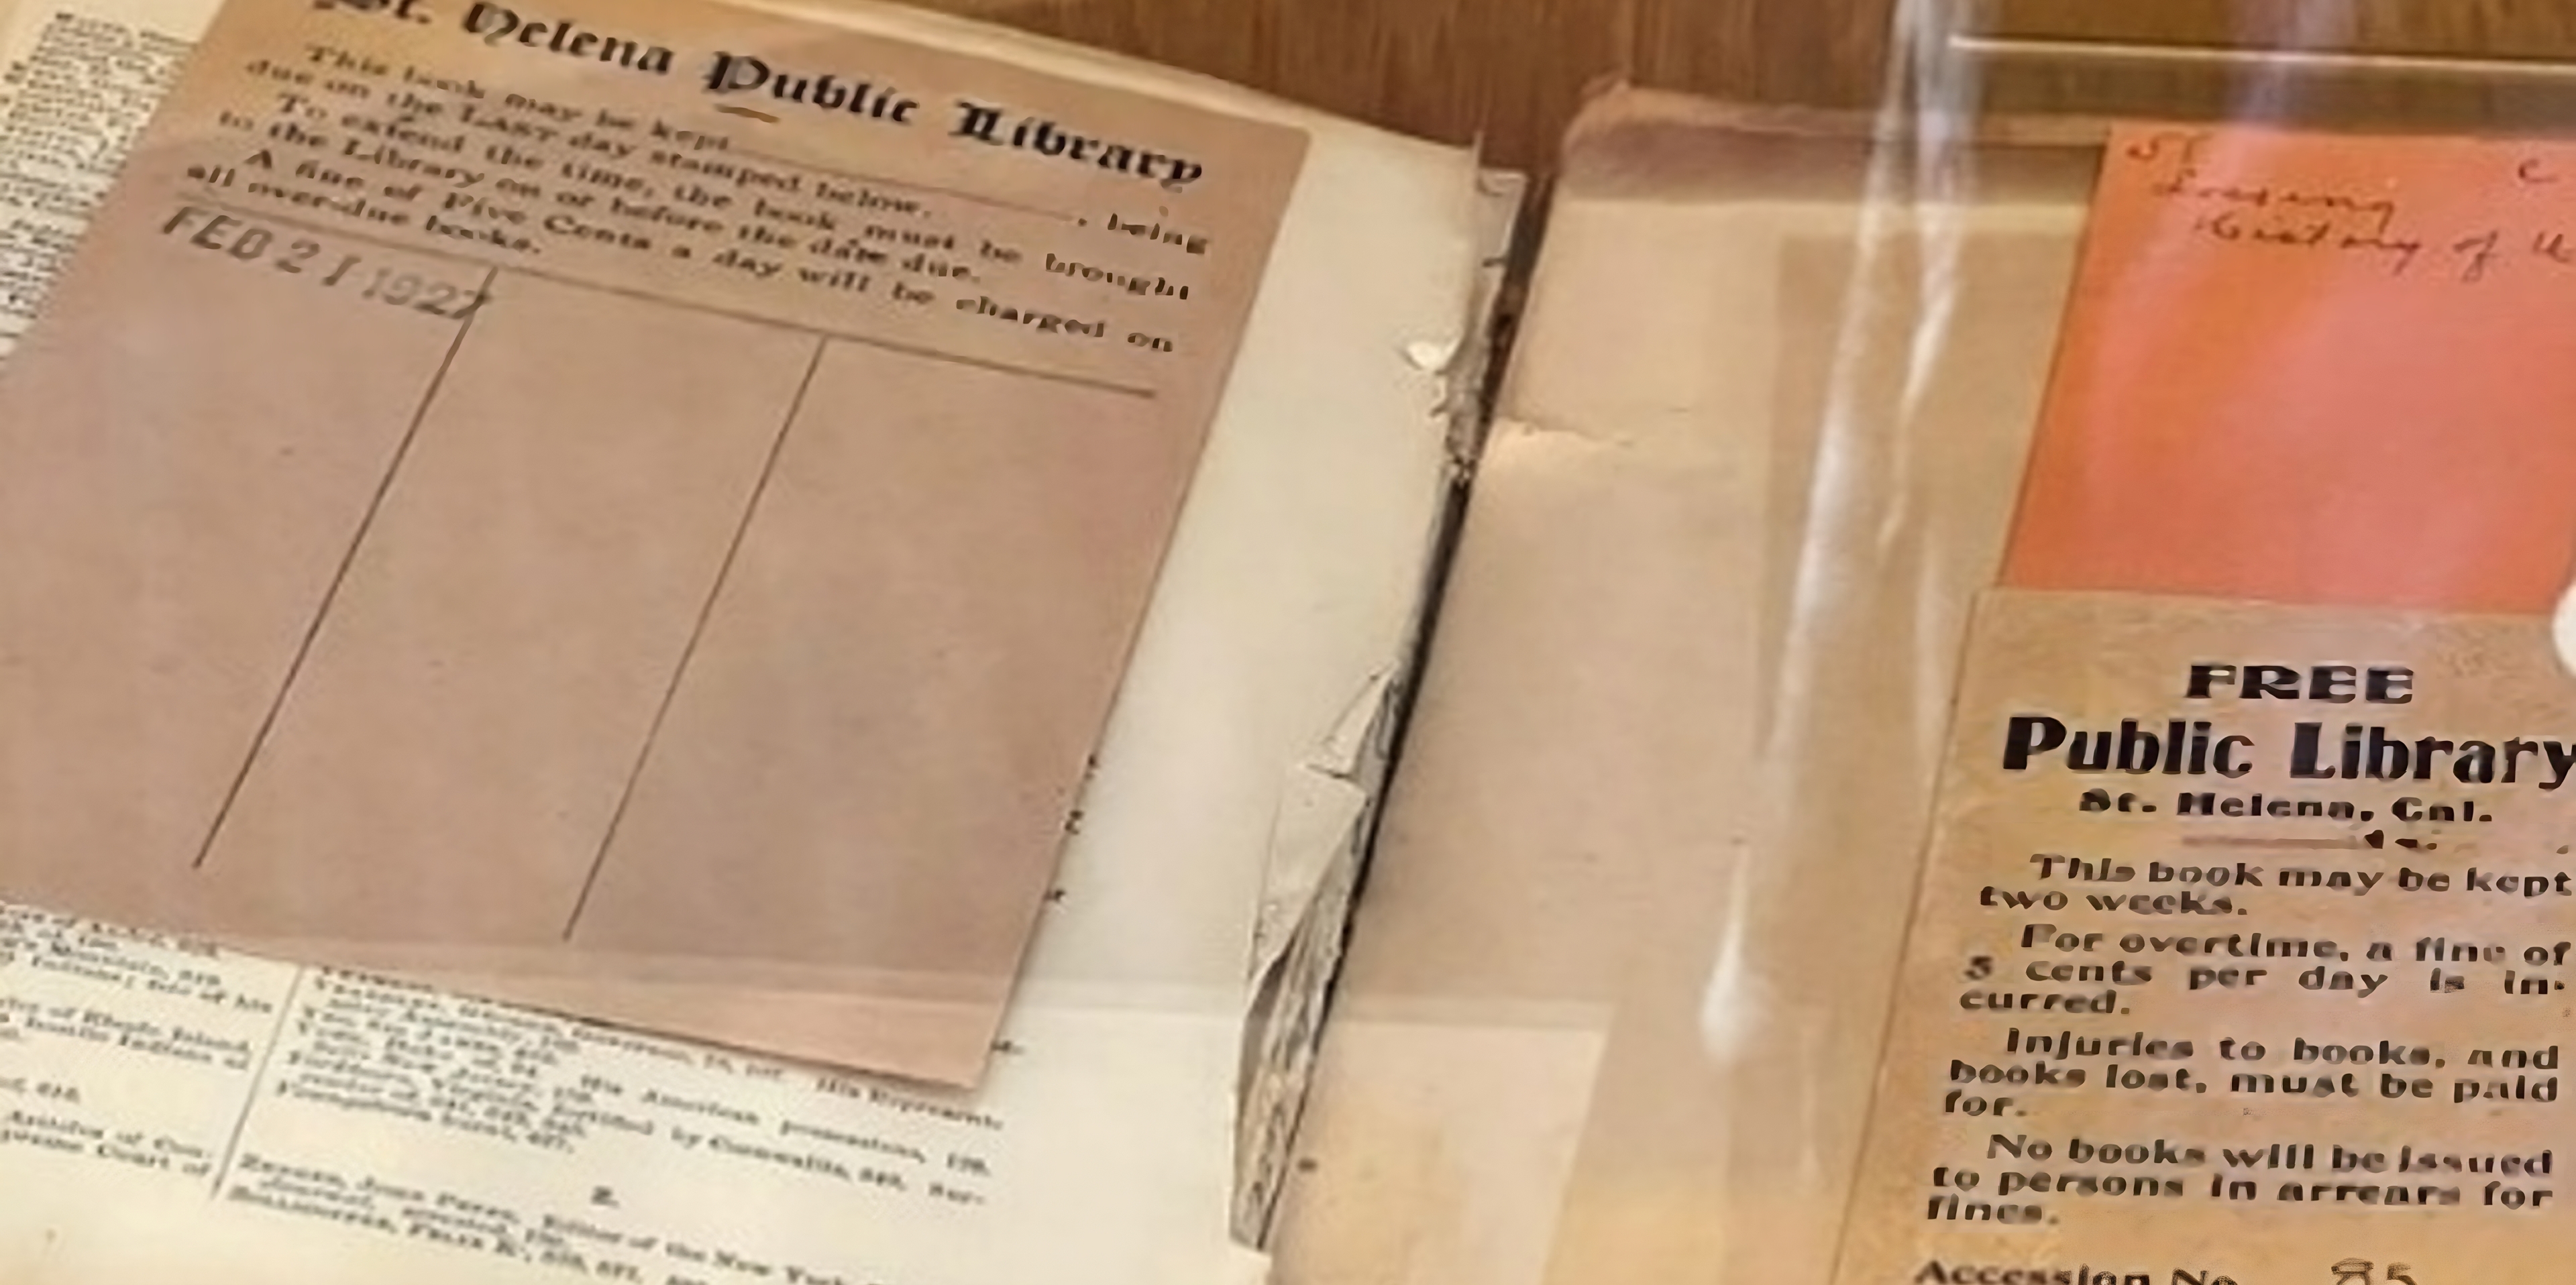 Pasaron 96 años antes de que un hombre regresara un libro prestado a una biblioteca pública en California